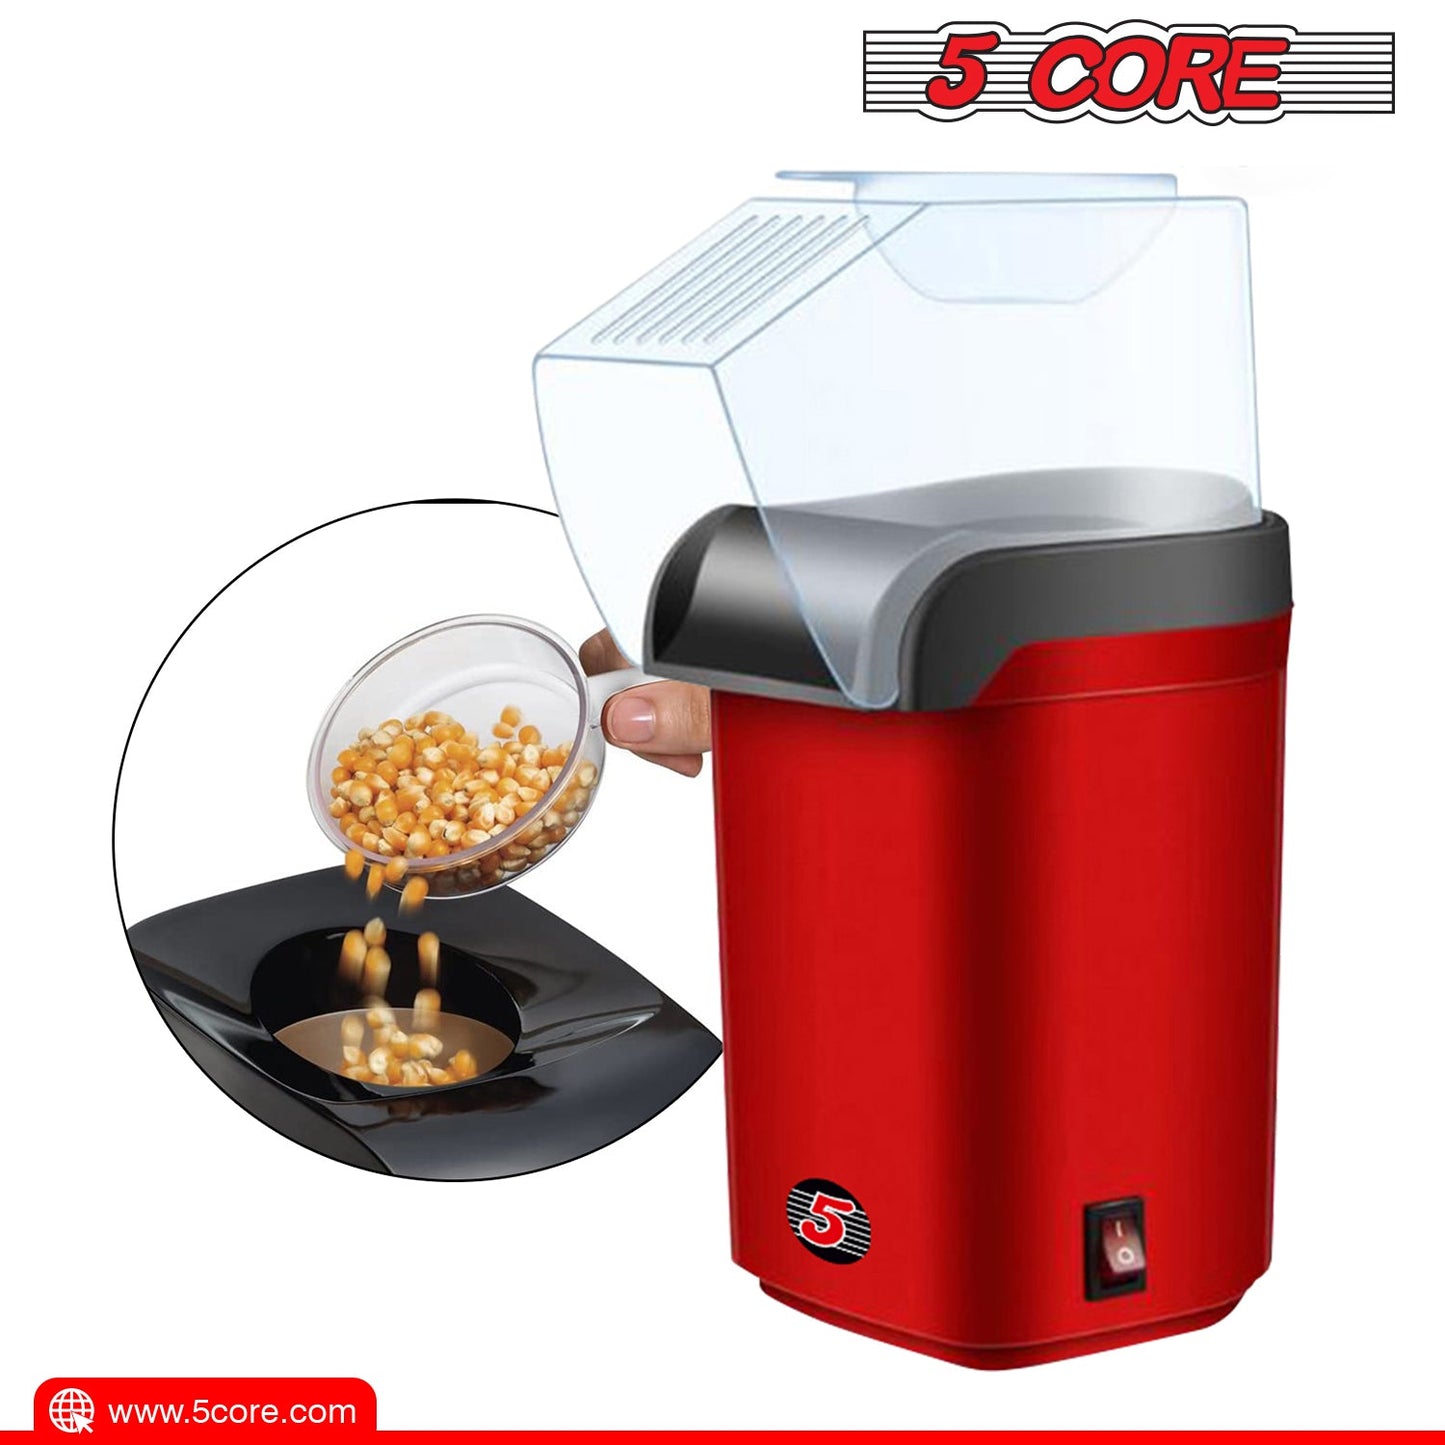 5Core Popcorn Machine Hot Air Electric Popper Kernel Corn Maker Bpa